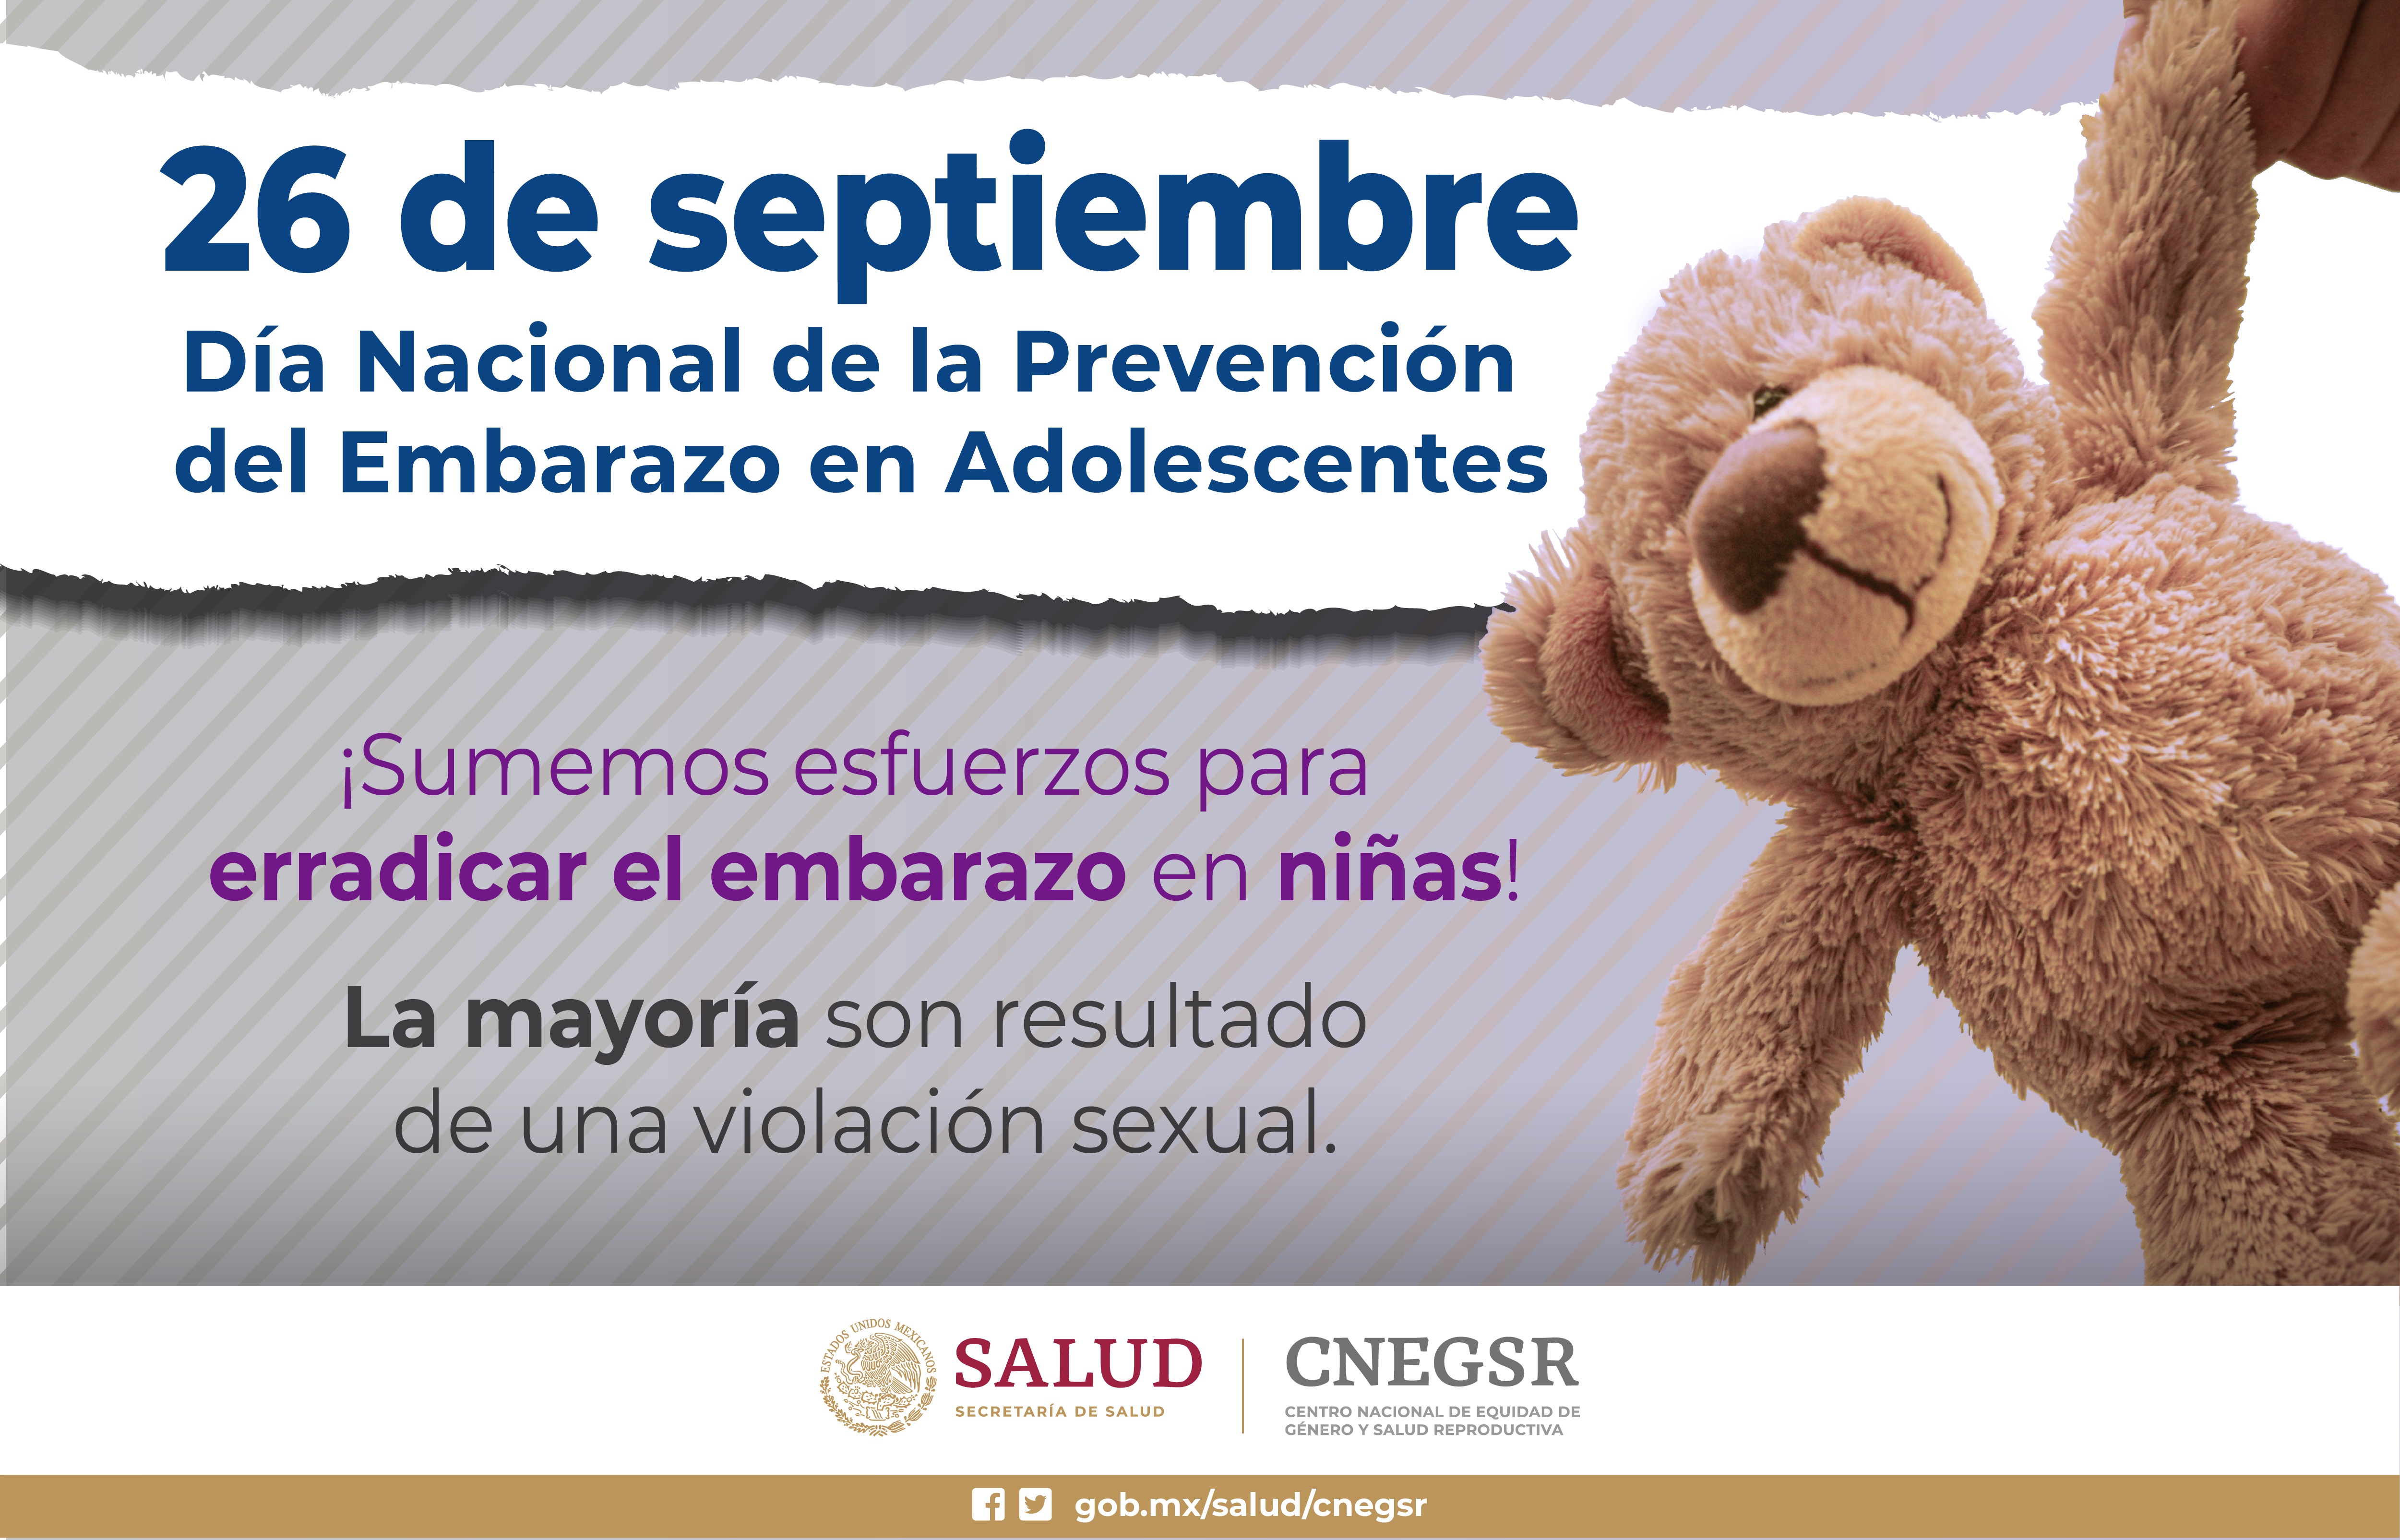 26 de Septiembre Día Nacional de la Prevención del embarazo en Adolescentes